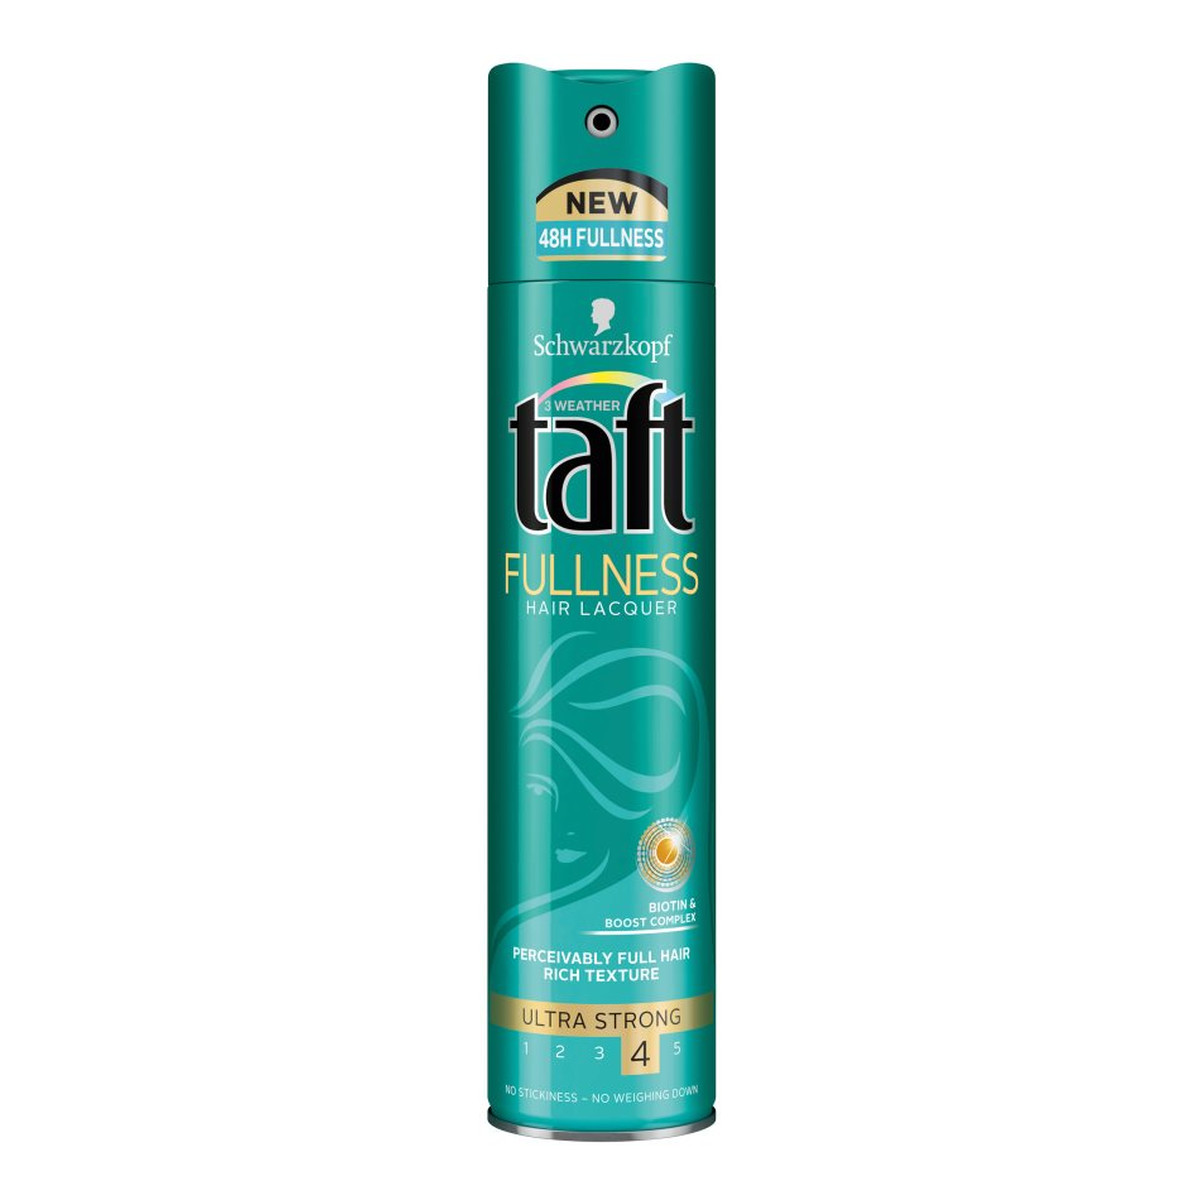 Taft Fullness Lakier do włosów 250ml